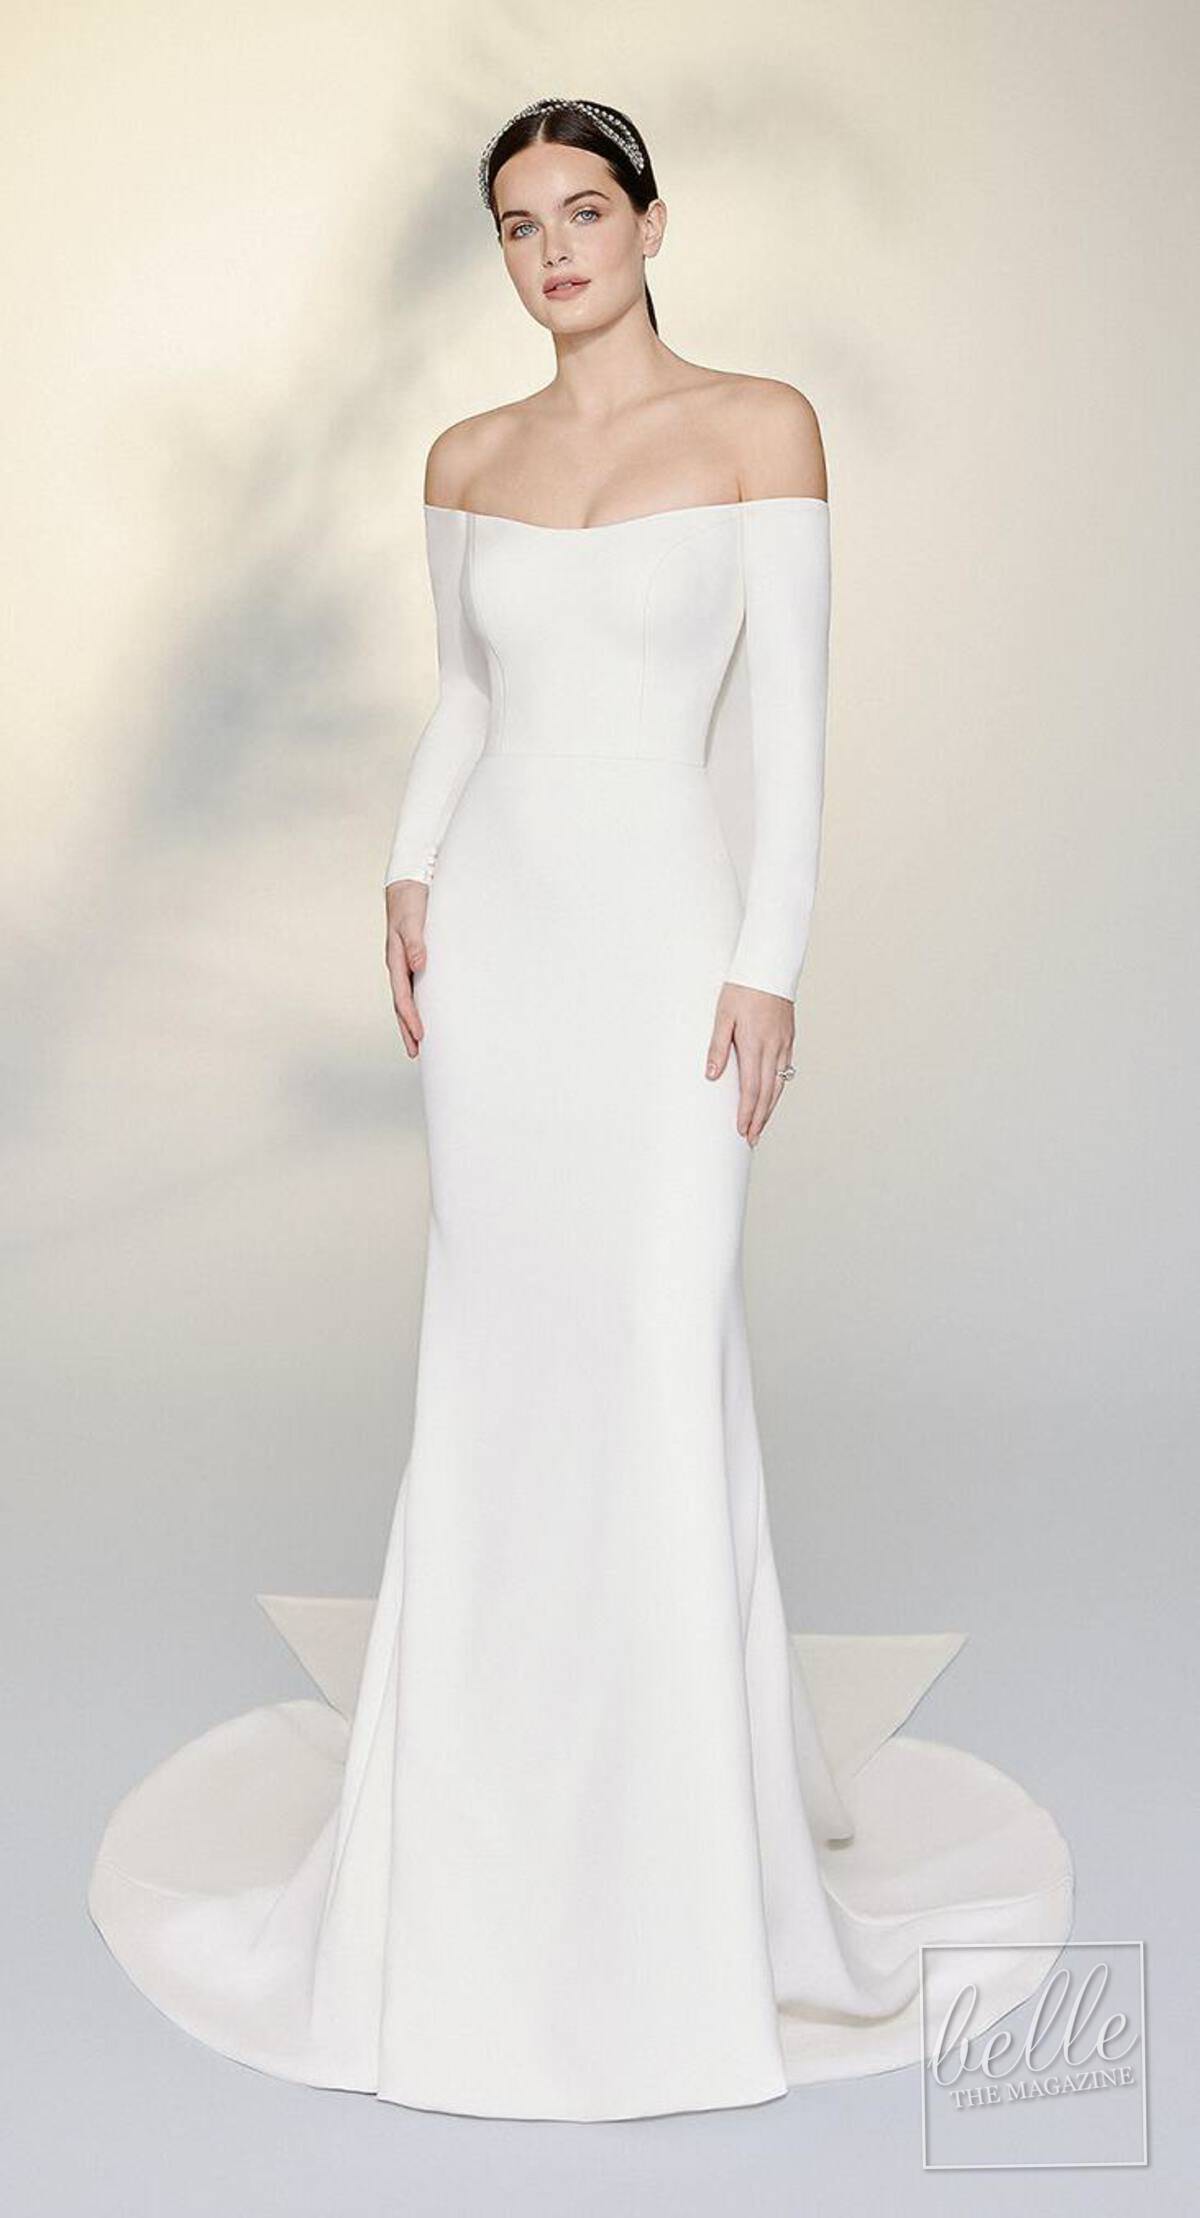 Wedding dress trends 2021 - Minimalist gown - Justin Alexander Signature - MARGOT